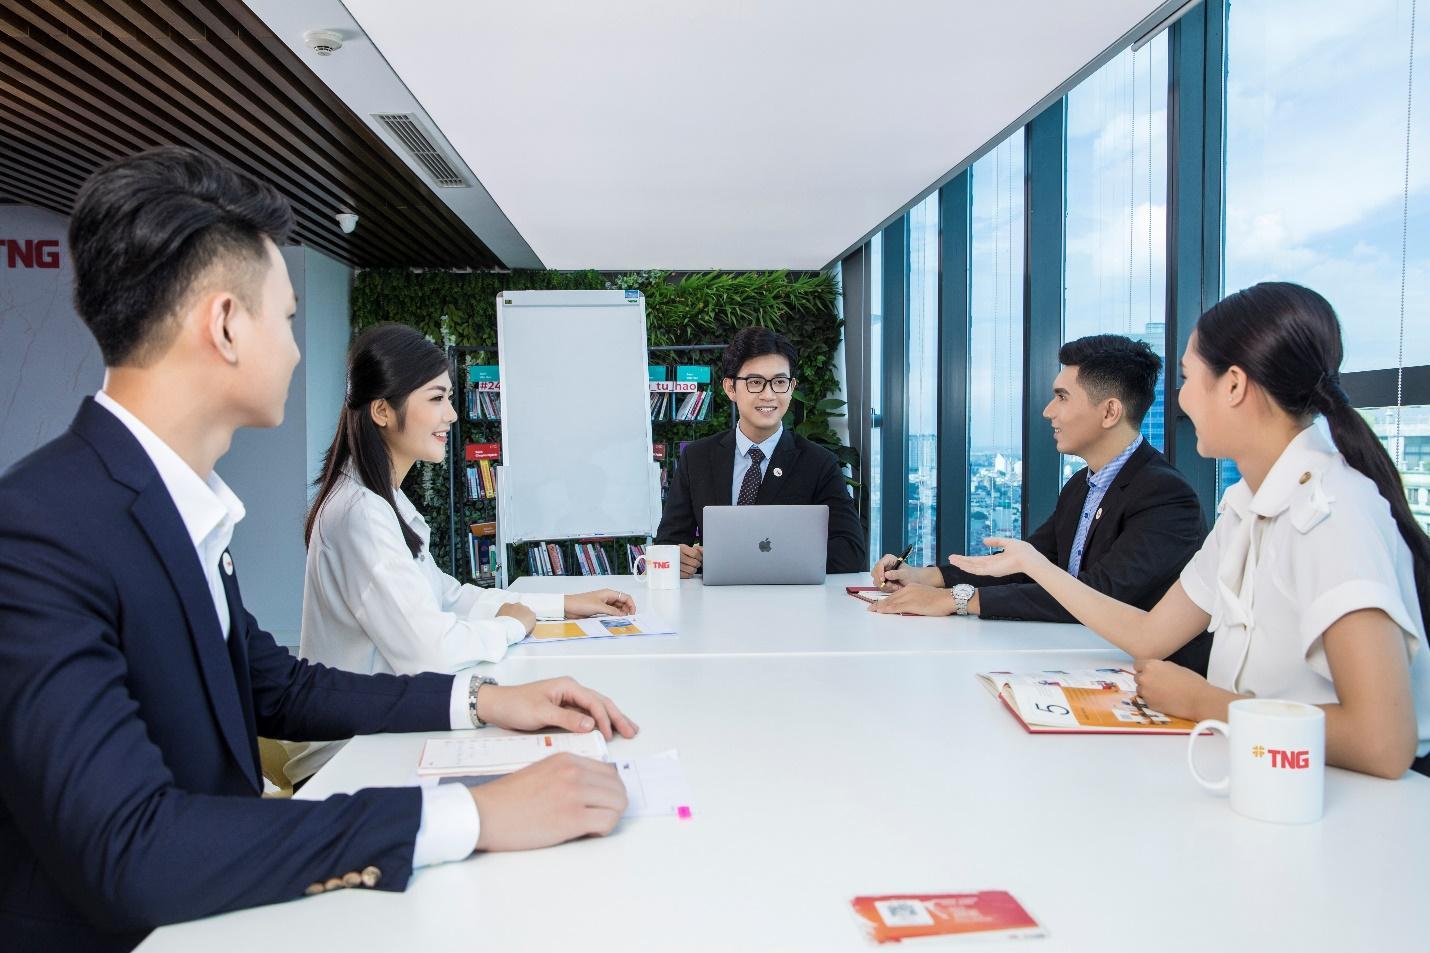 HR Asia vinh danh TNG Holdings Vietnam là “Nơi làm việc tốt nhất châu Á” - Ảnh 3.